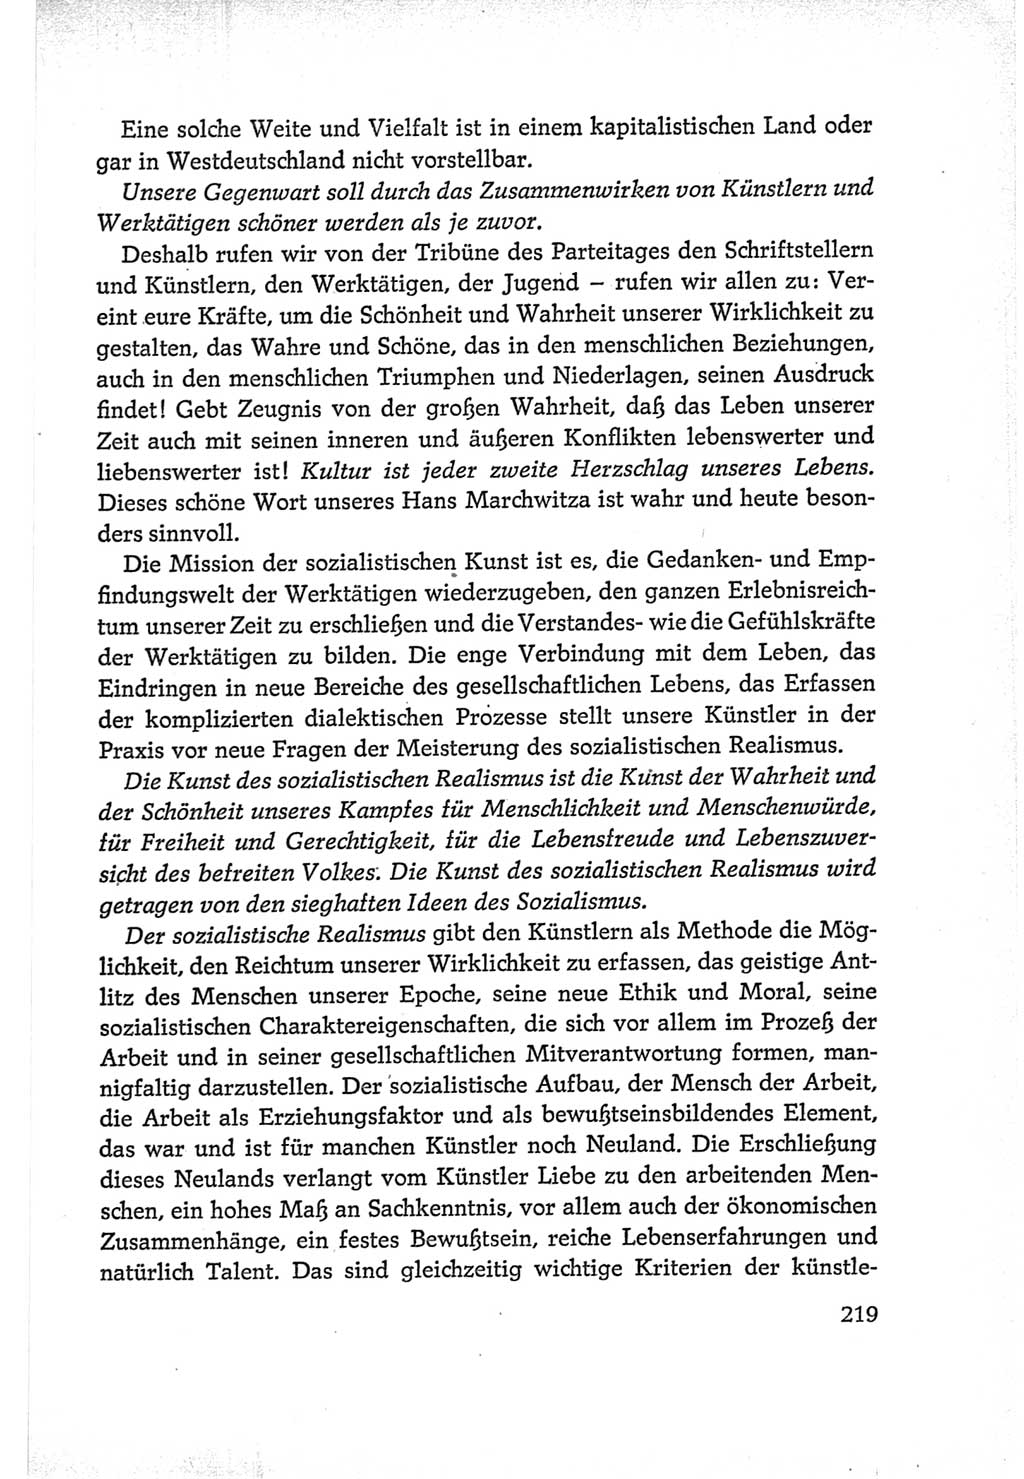 Protokoll der Verhandlungen des Ⅵ. Parteitages der Sozialistischen Einheitspartei Deutschlands (SED) [Deutsche Demokratische Republik (DDR)] 1963, Band Ⅰ, Seite 219 (Prot. Verh. Ⅵ. PT SED DDR 1963, Bd. Ⅰ, S. 219)